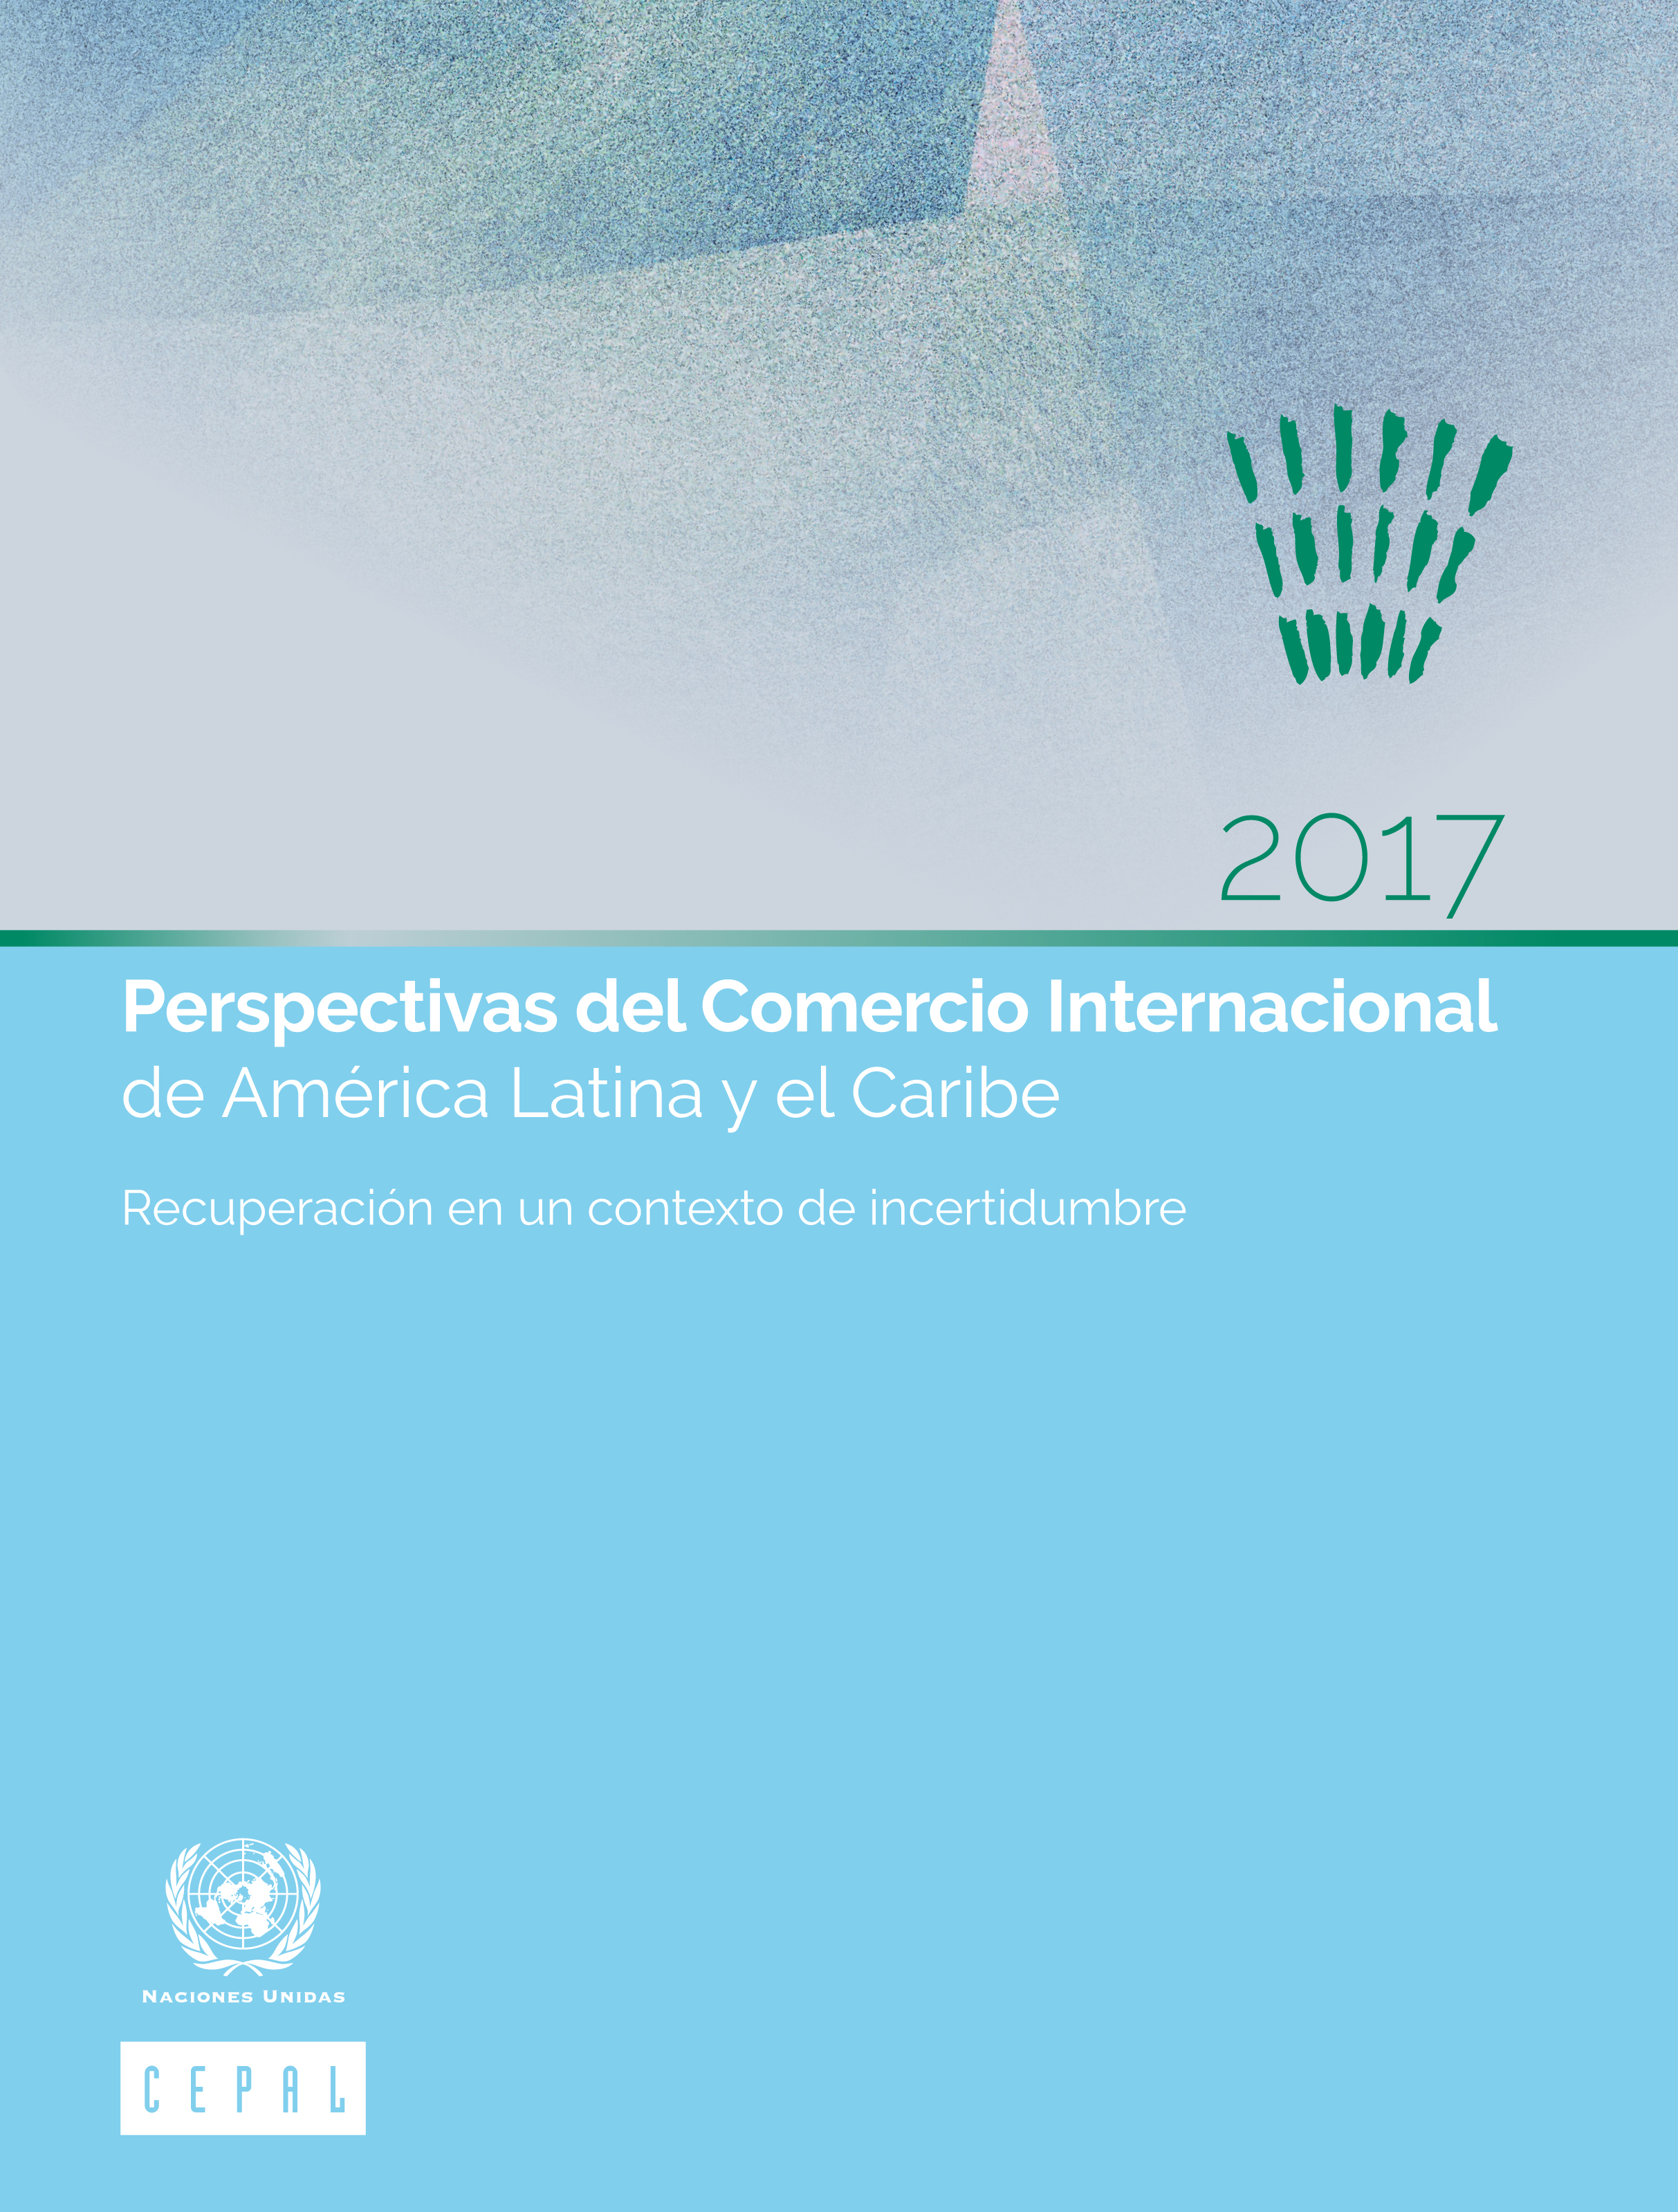 image of Perspectivas del Comercio Internacional de América Latina y el Caribe 2017